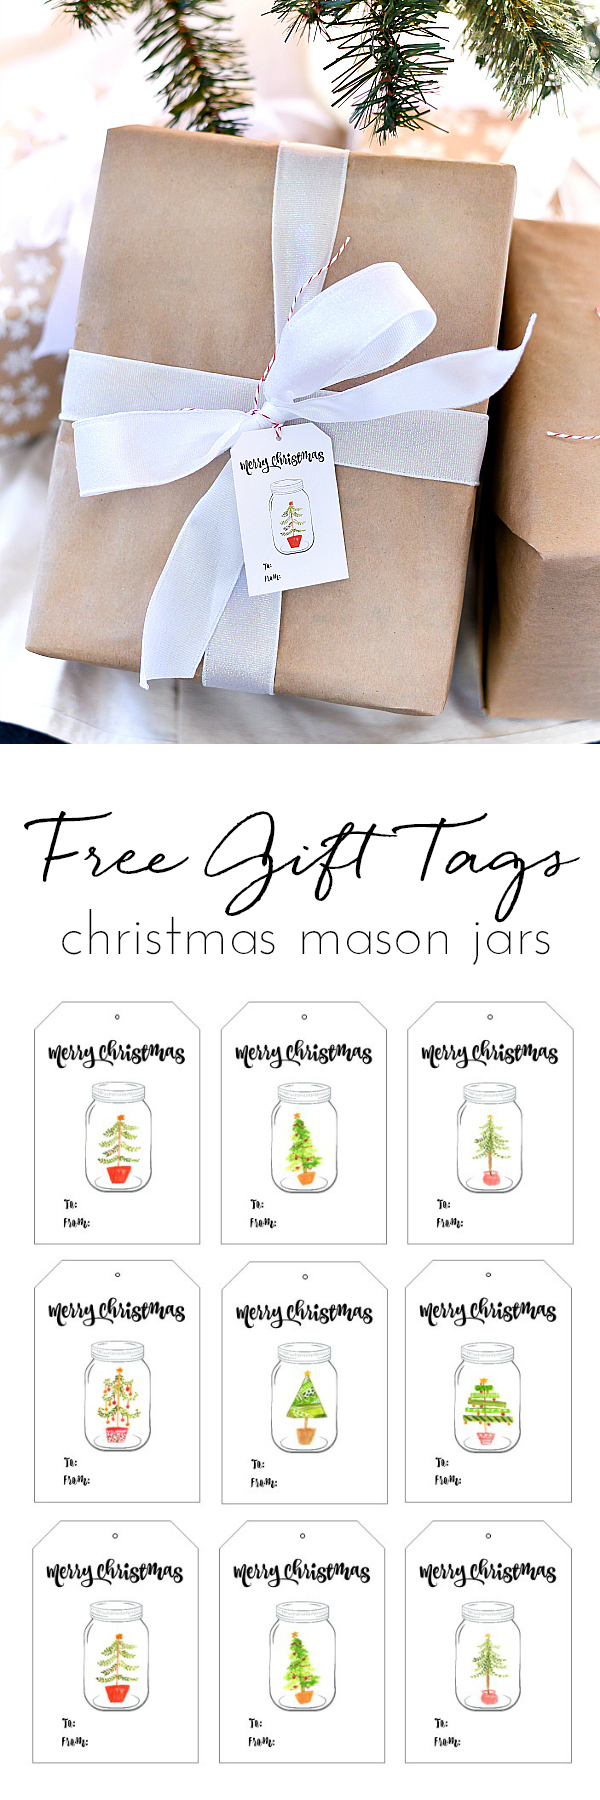 Free Printable Christmas Gift Tags - Mason Jar Christmas Gift Tags